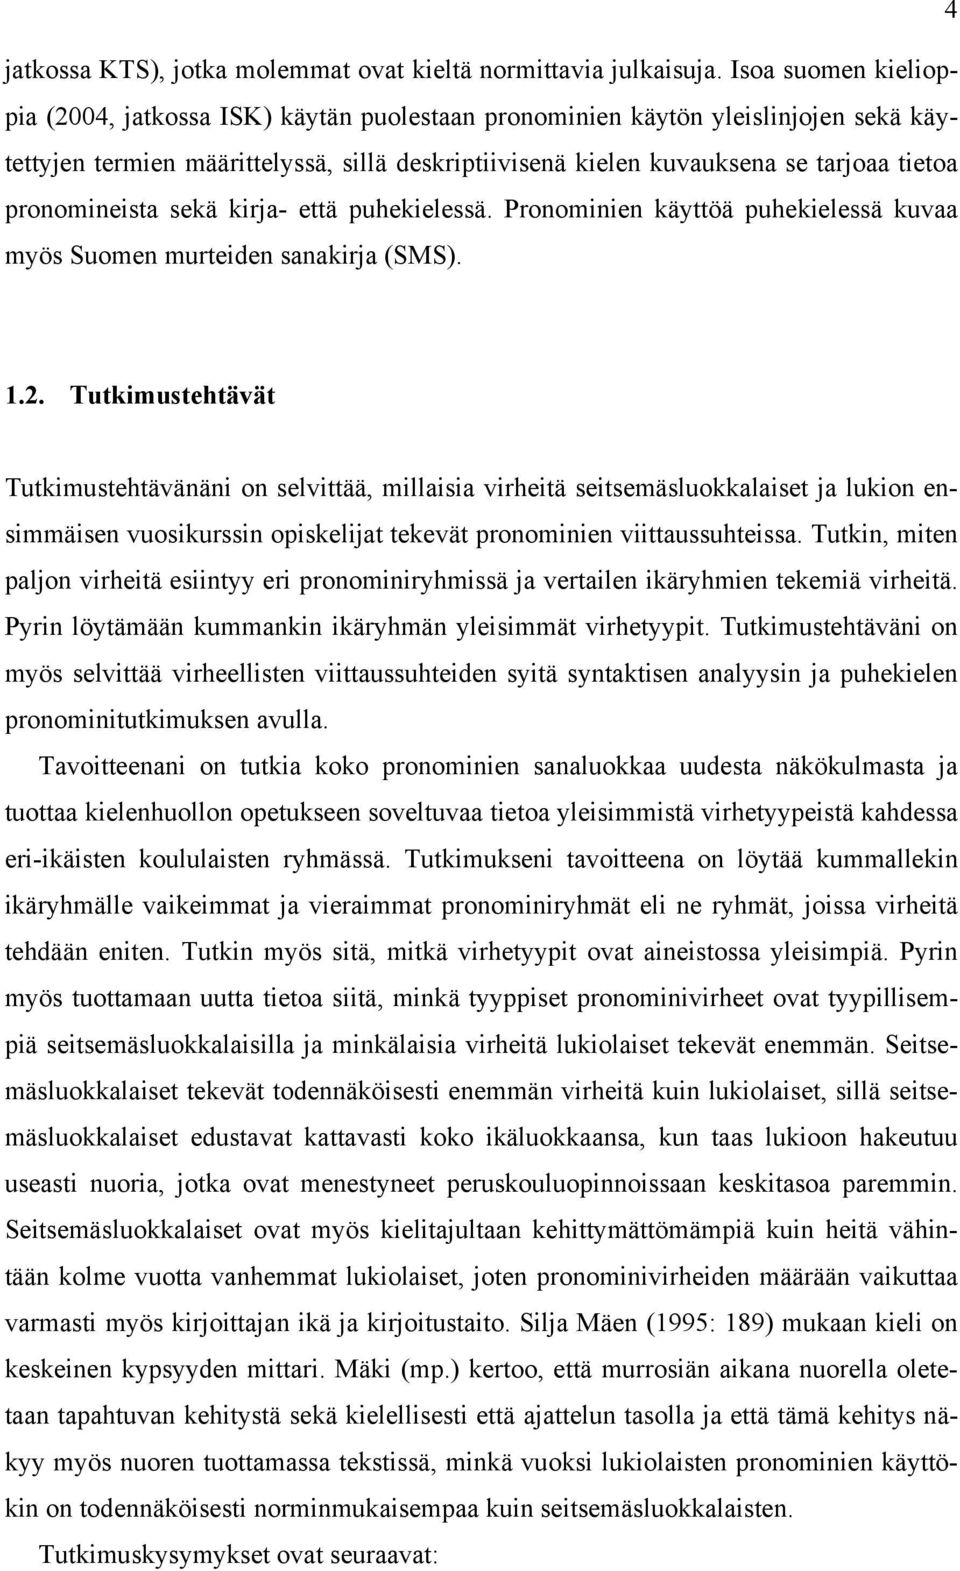 pronomineista sekä kirja- että puhekielessä. Pronominien käyttöä puhekielessä kuvaa myös Suomen murteiden sanakirja (SMS). 1.2.